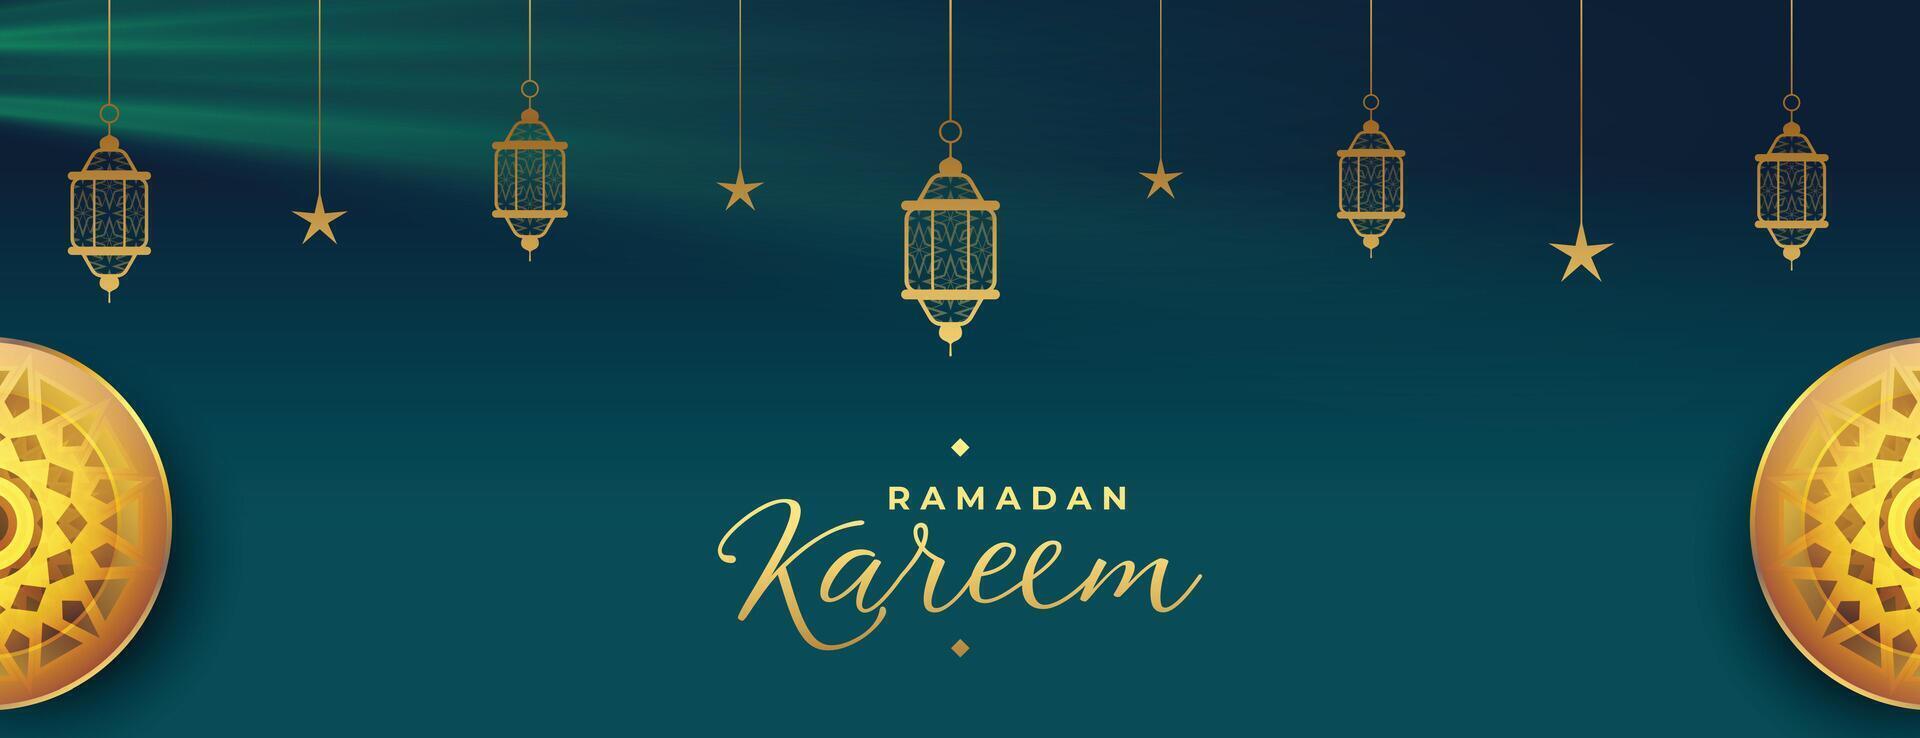 ramadan kareem säsong- baner med arabicum dekoration vektor